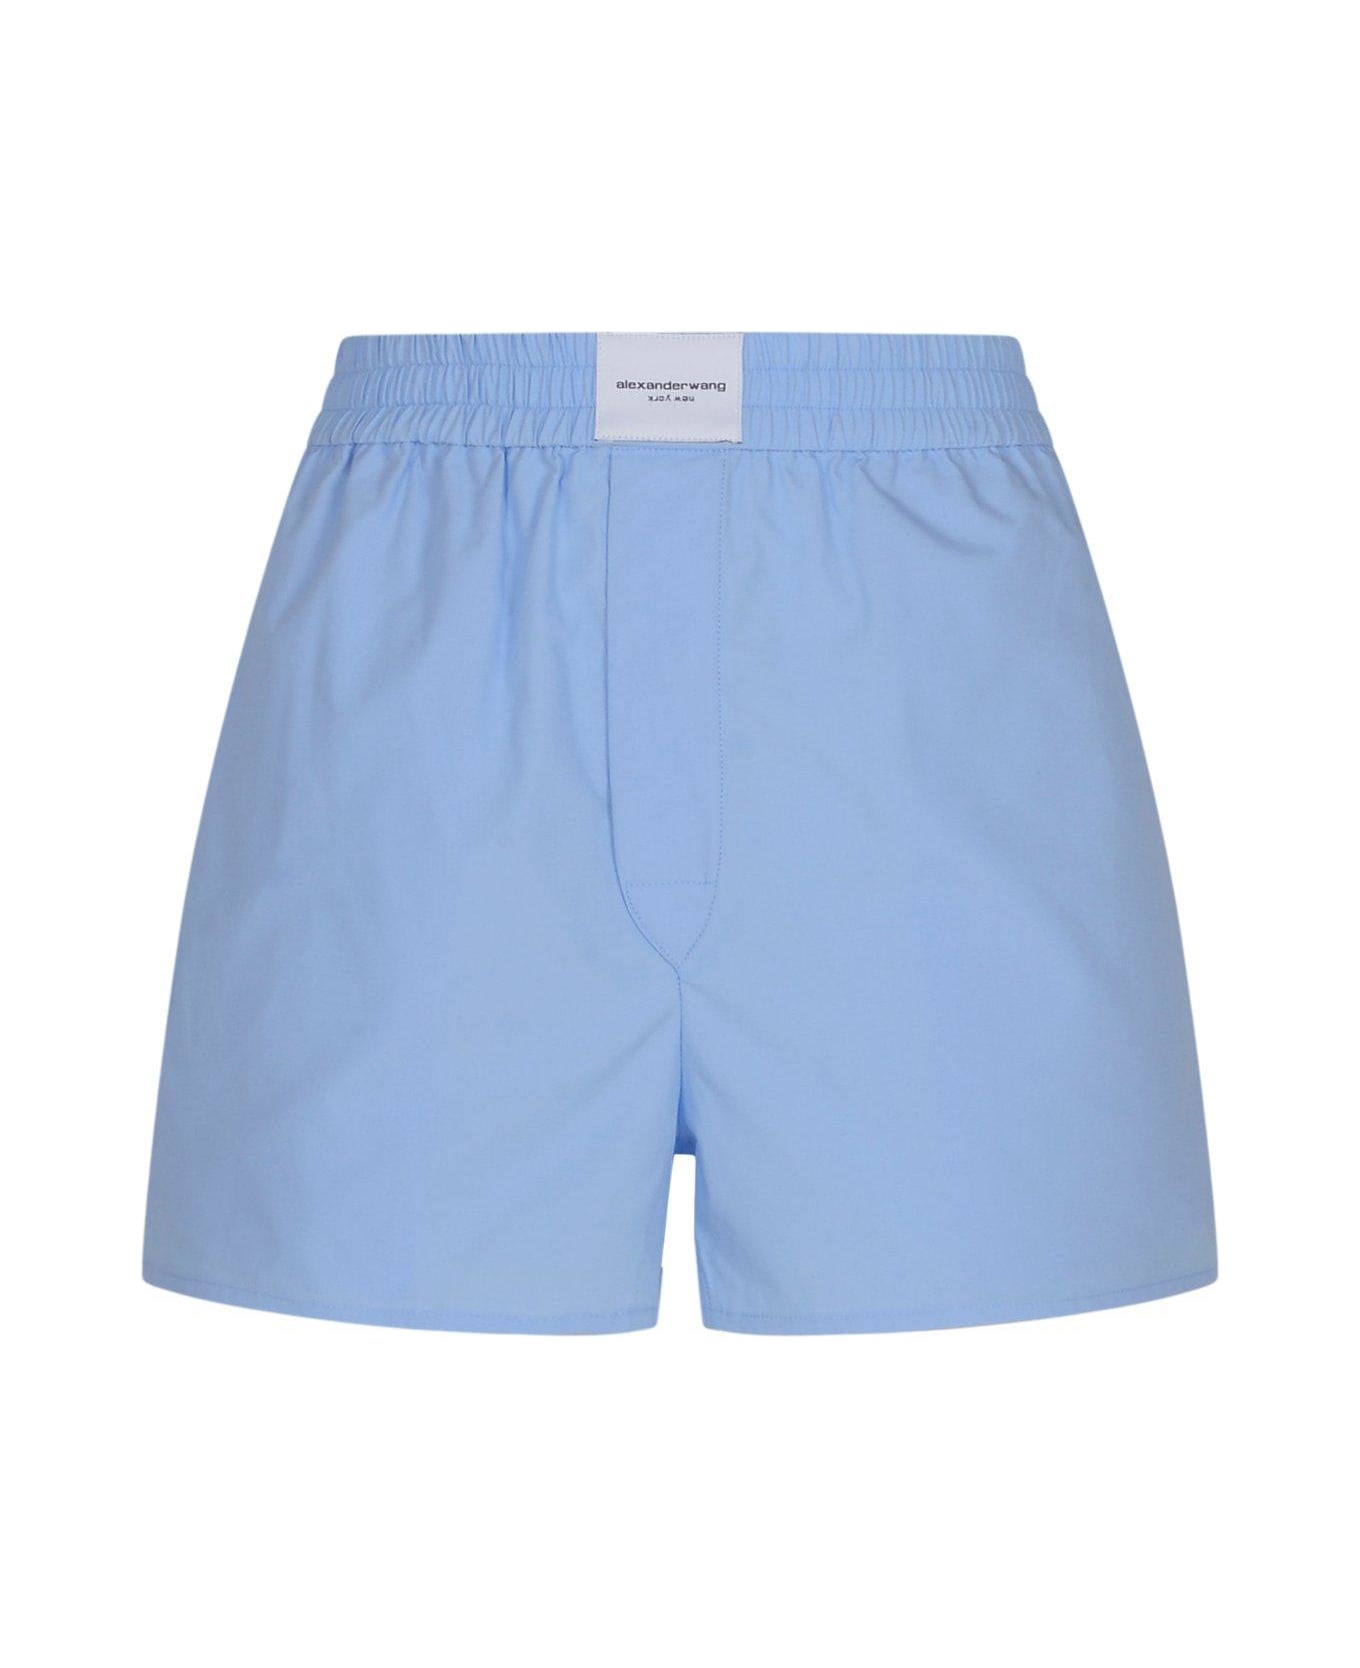 Alexander Wang Petit Shorts - CHAMBRAY BLUE